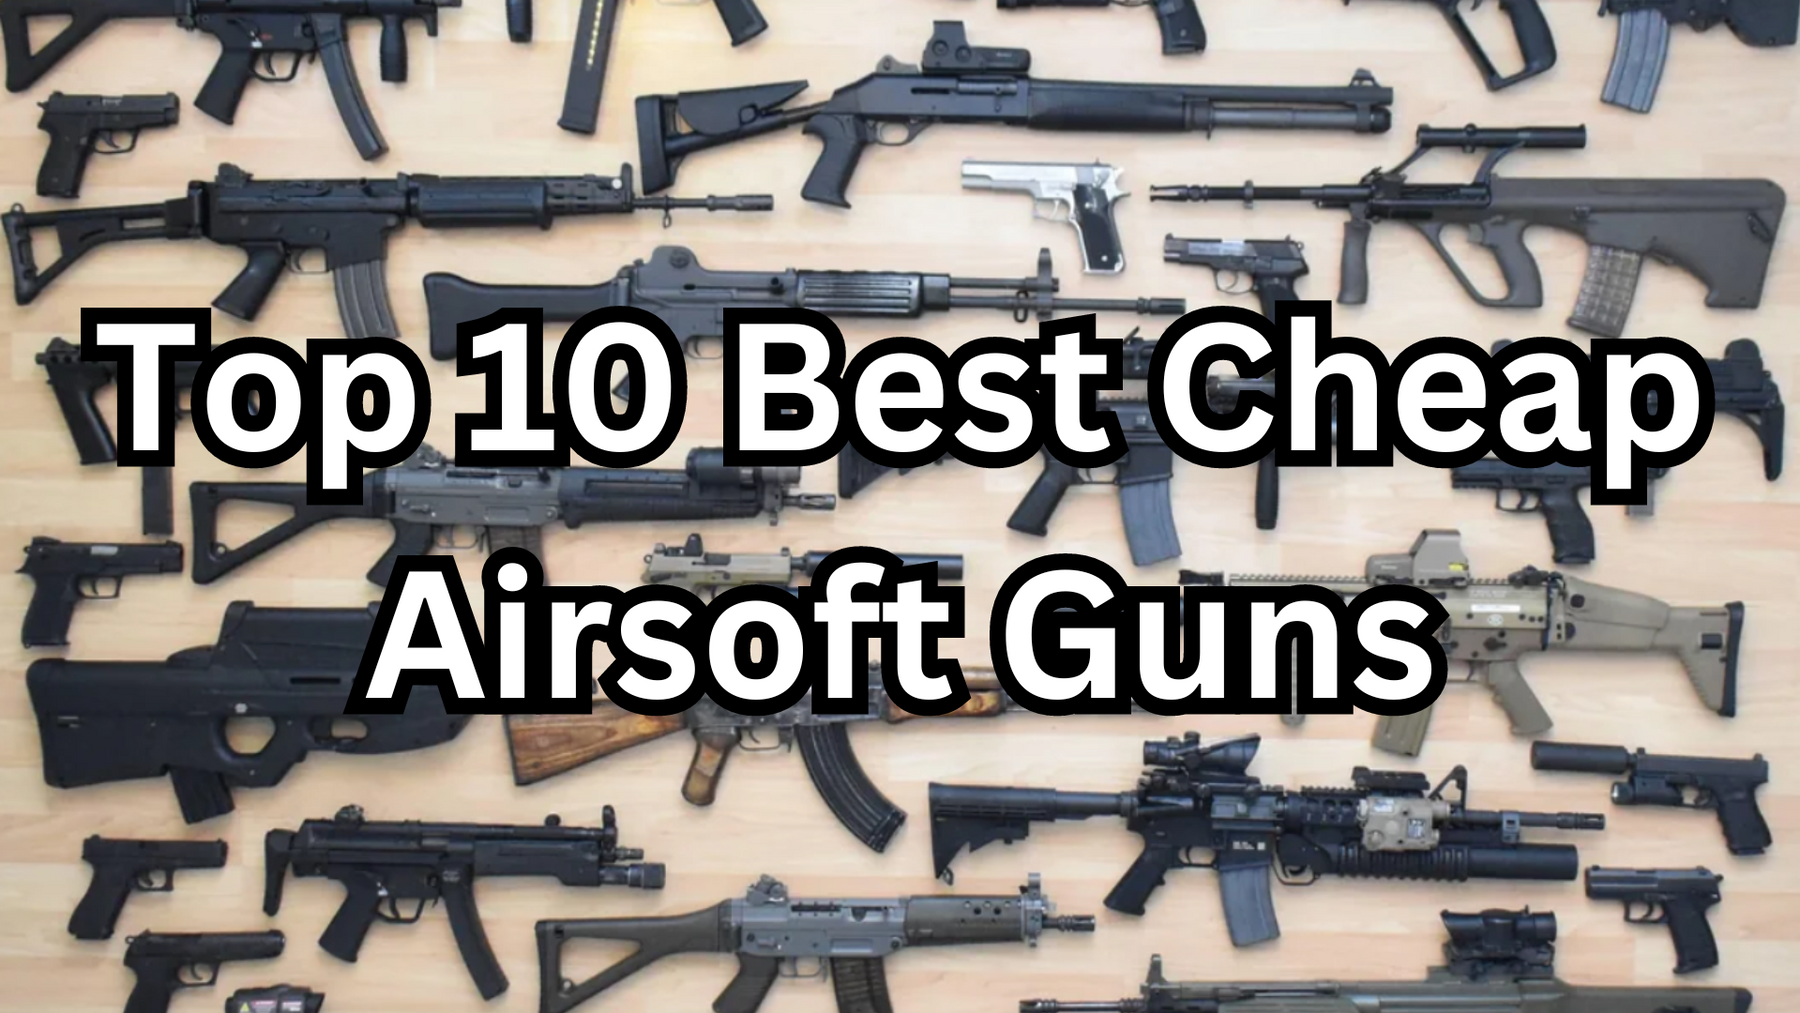 Top 10 Best Cheap Airsoft Guns